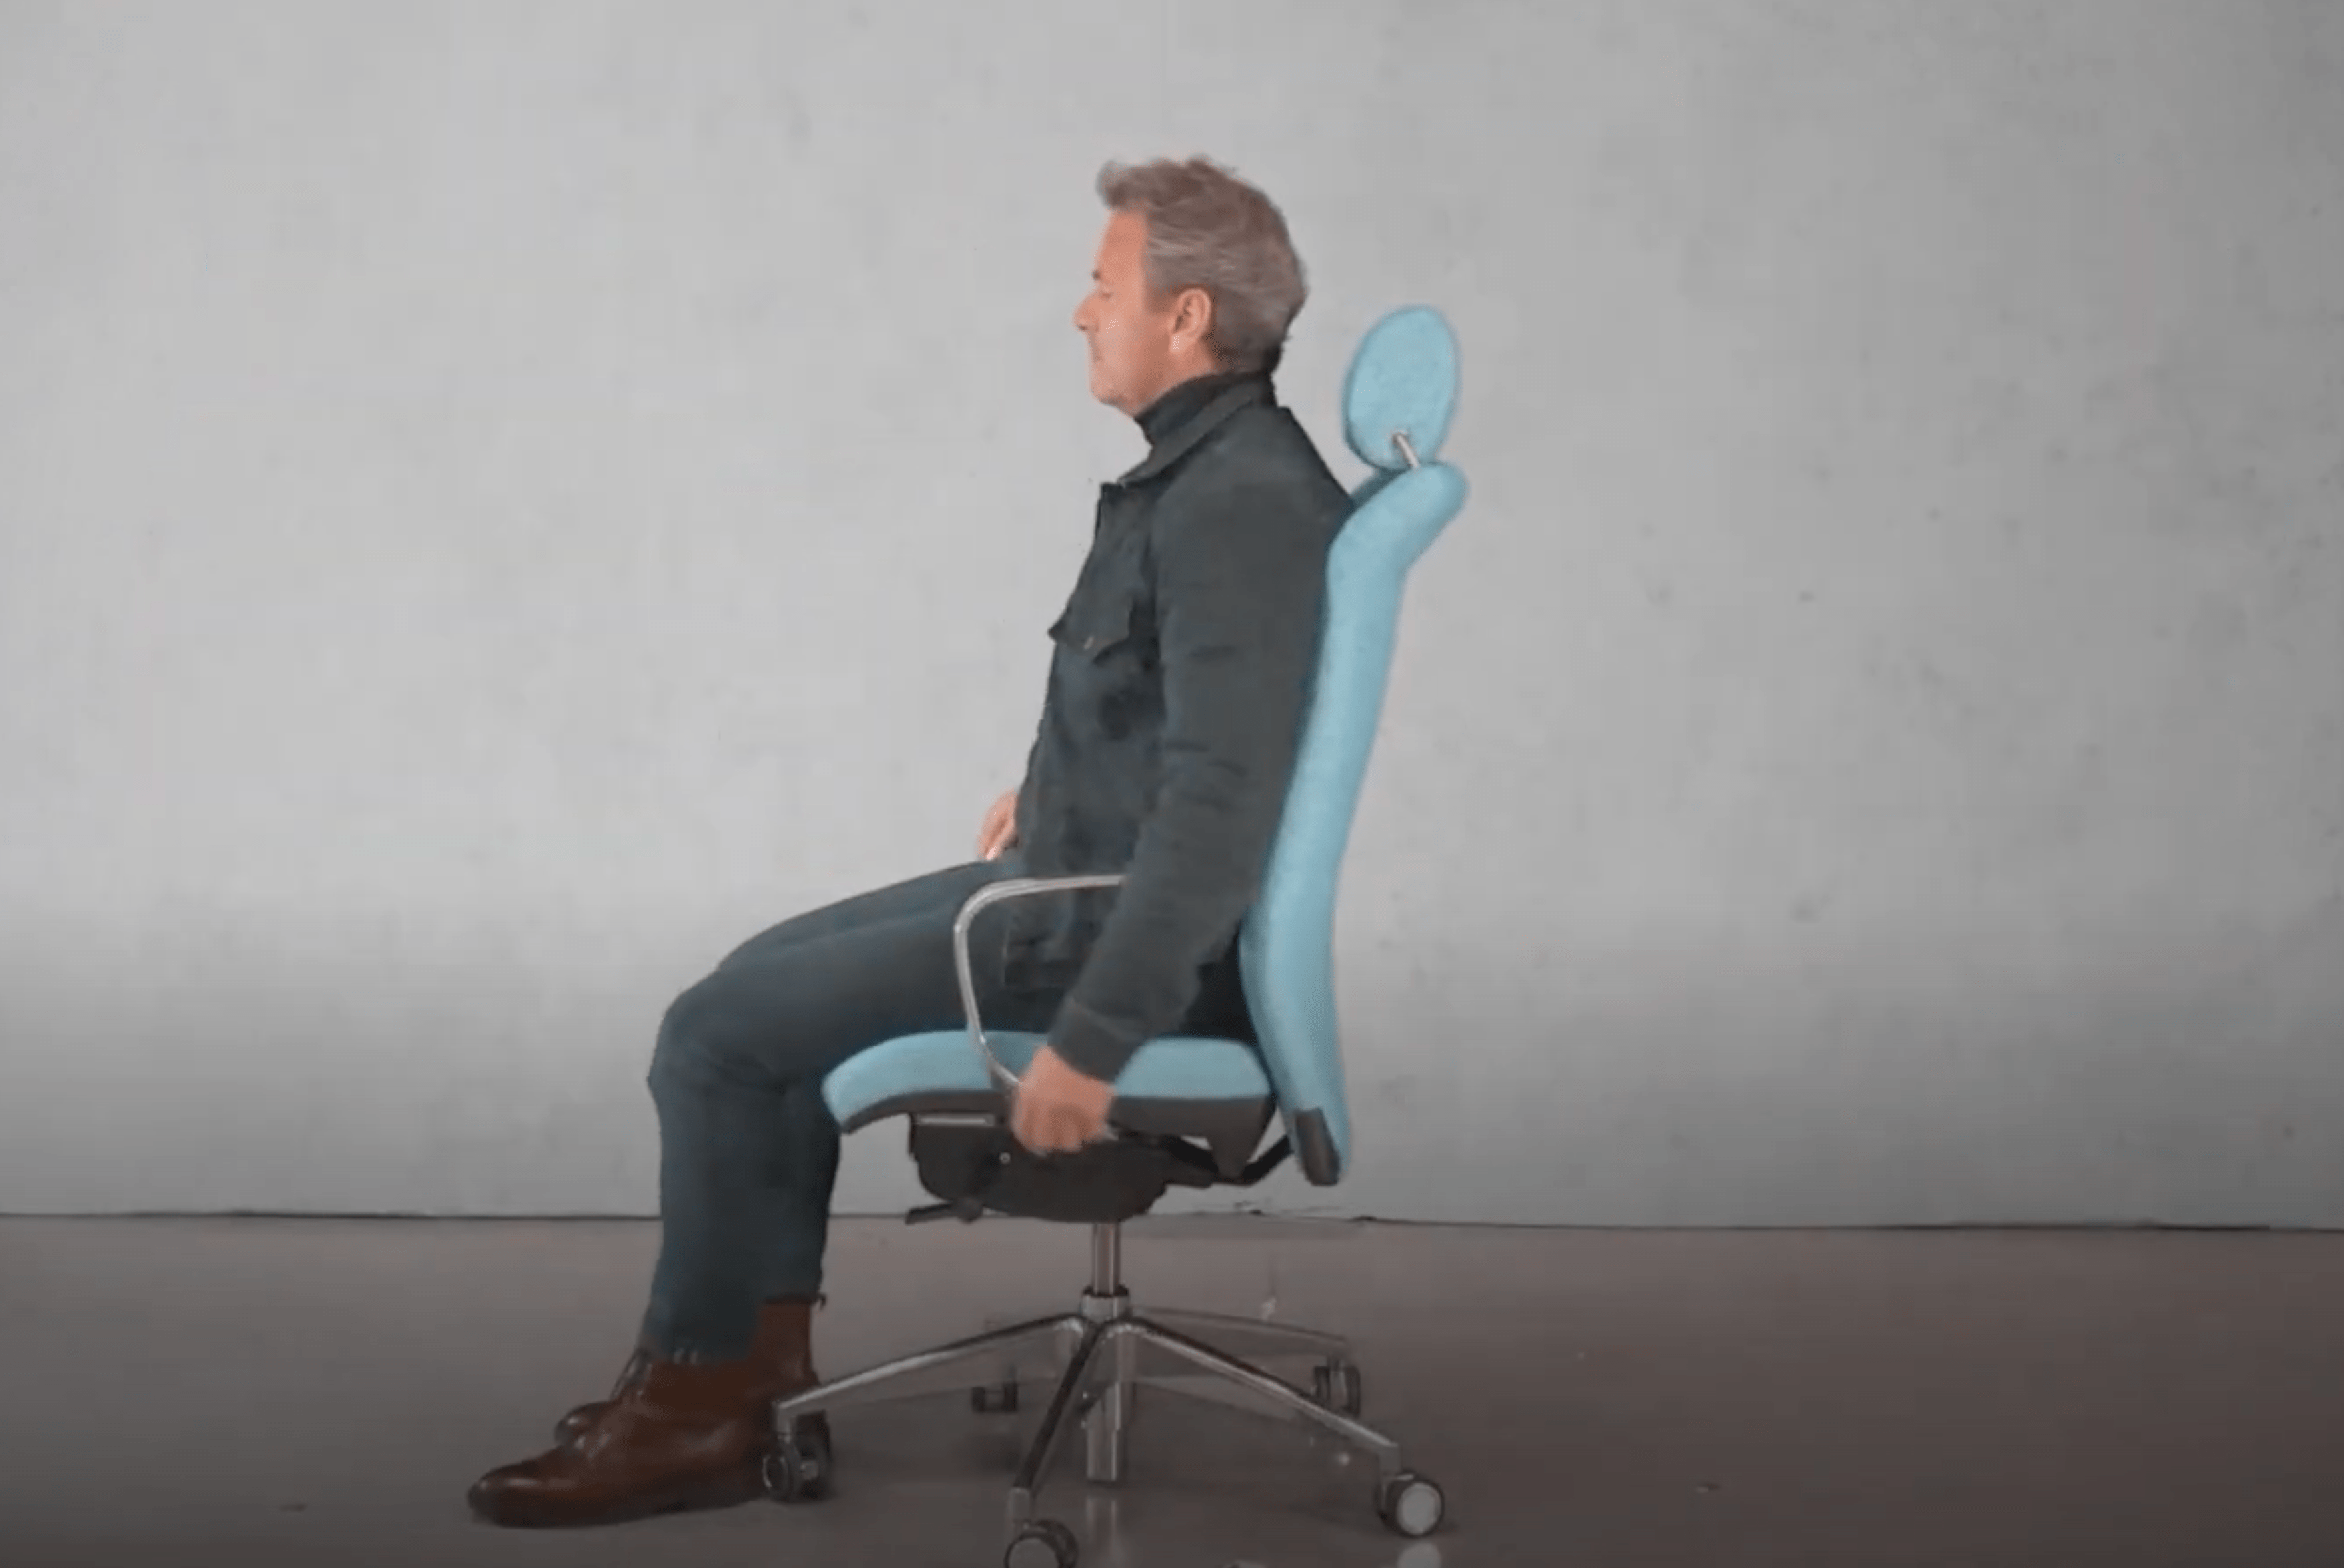 Fauteuil, Siège ou Chaise de bureau : les questions fréquentes